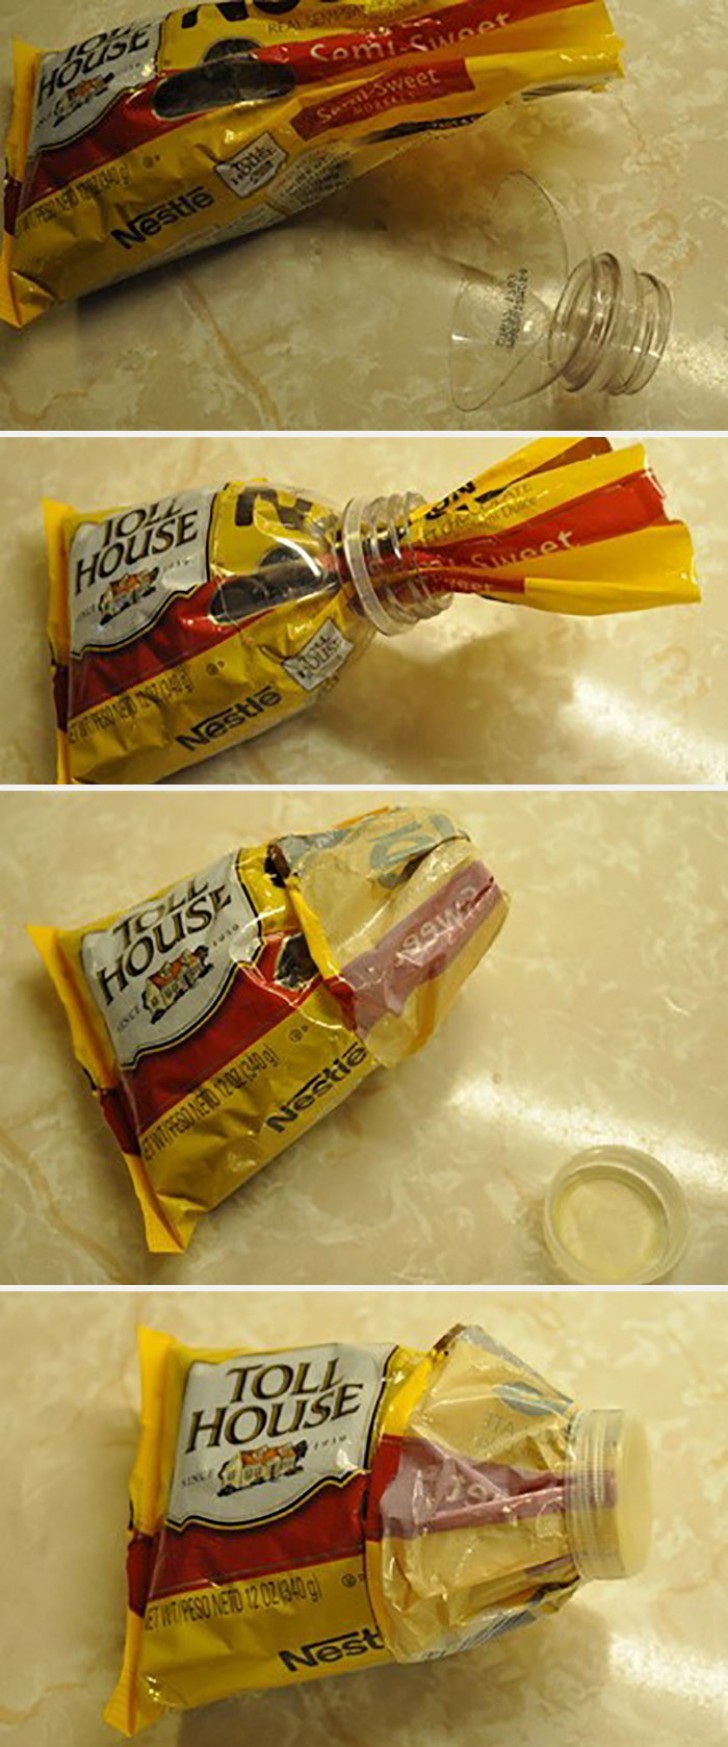 2. Gebruik het bovenste gedeelte van de fles om een open zakje op de perfecte manier te sluiten.